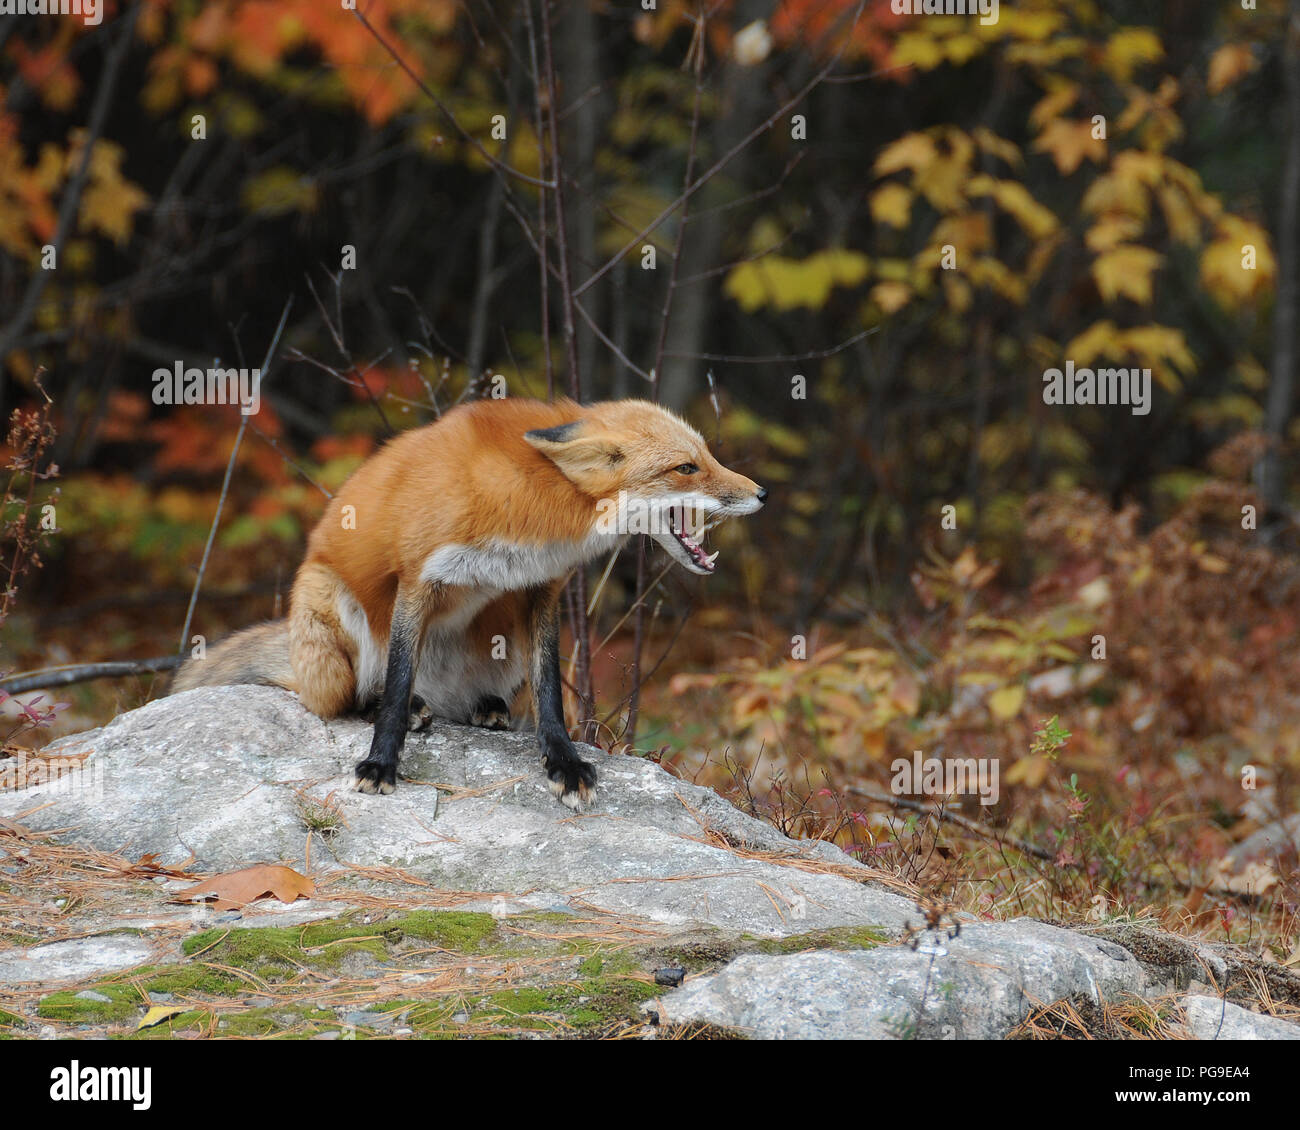 Red Fox Tier close-up Profil anzeigen in Schreien im Wald in seiner Umwelt und Umgebung. Stockfoto